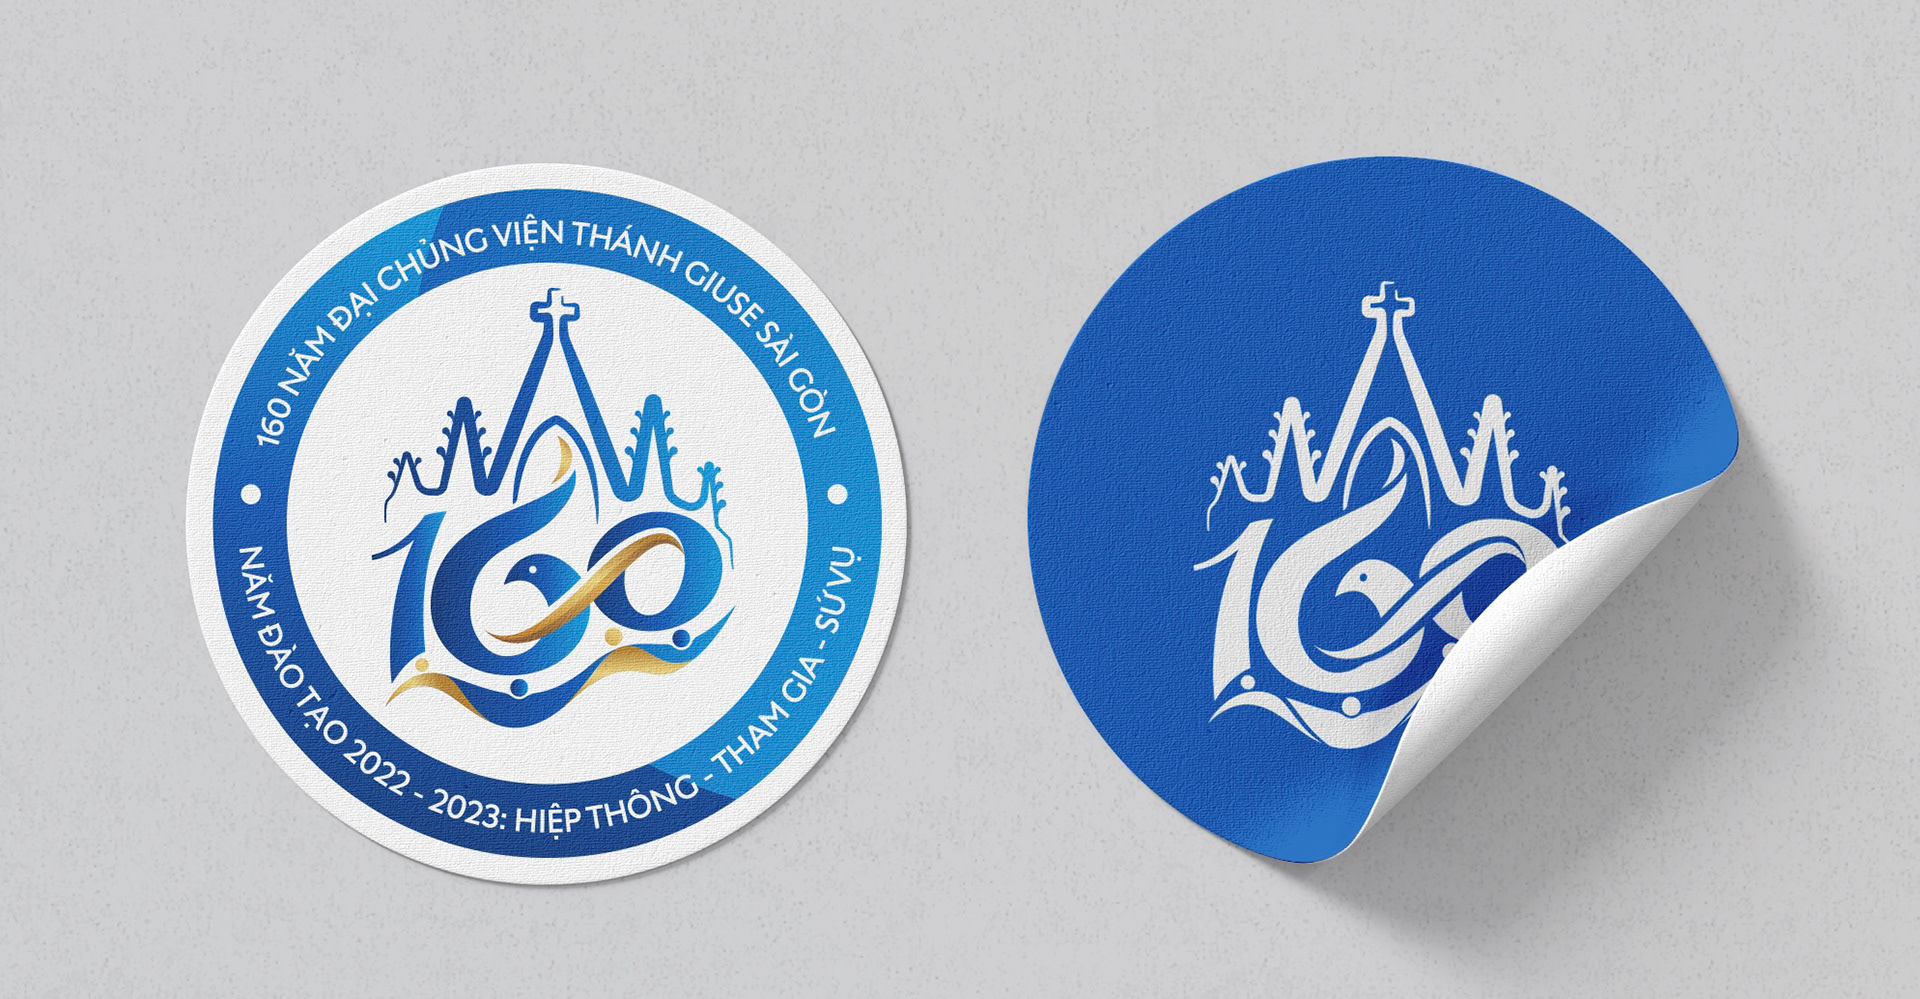 Logo mừng kỉ niệm 160 năm Đại chủng viện Thánh Giuse Sài Gòn 01